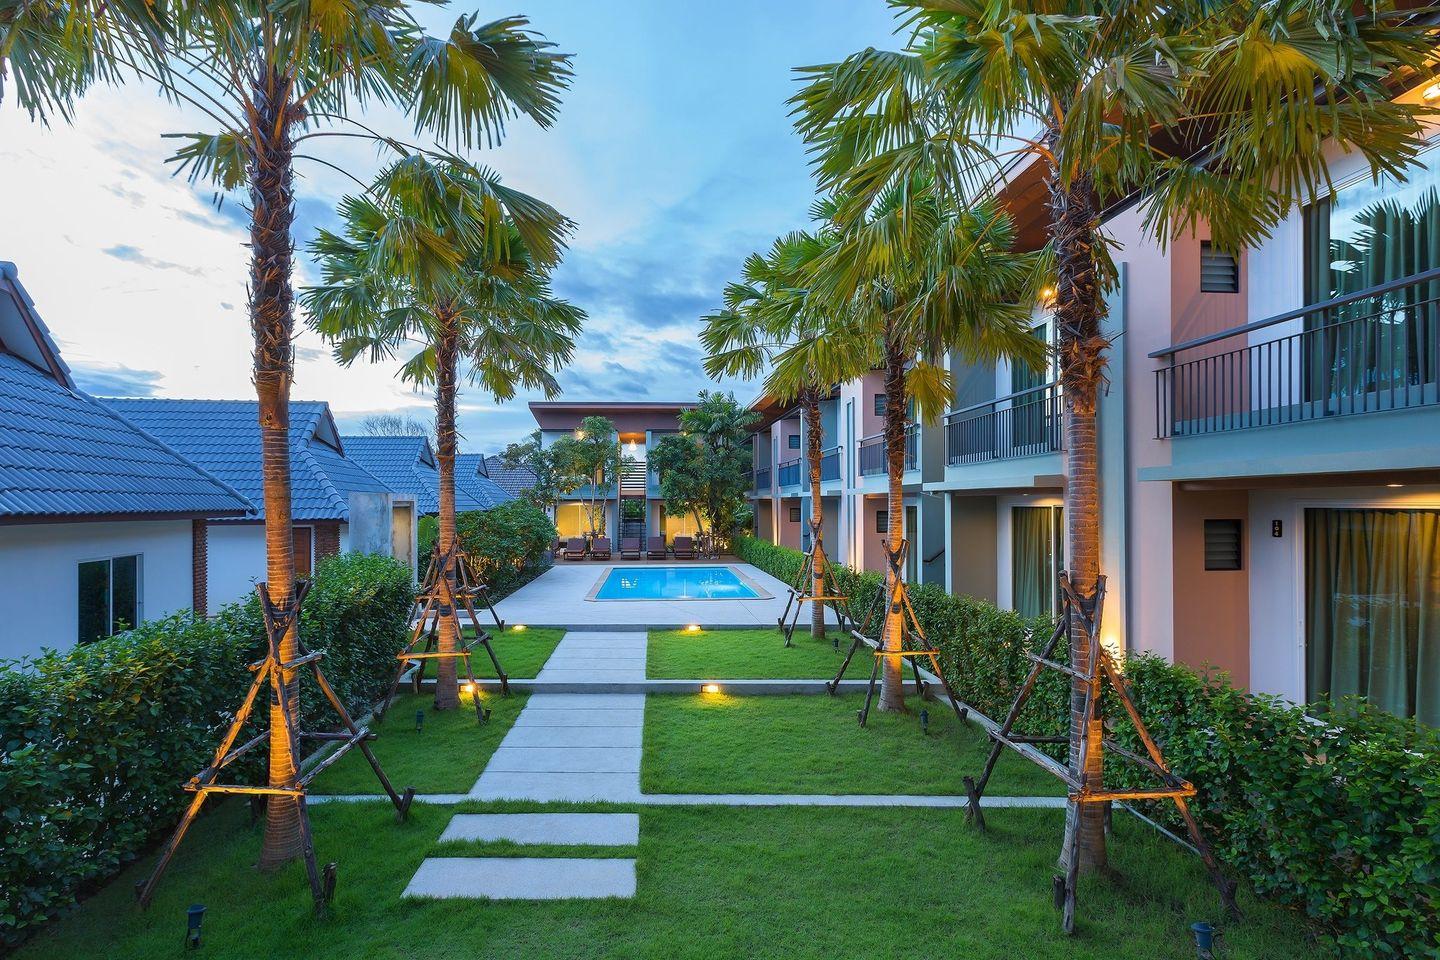 4. ปาริดา รีสอร์ท - Parida Resort